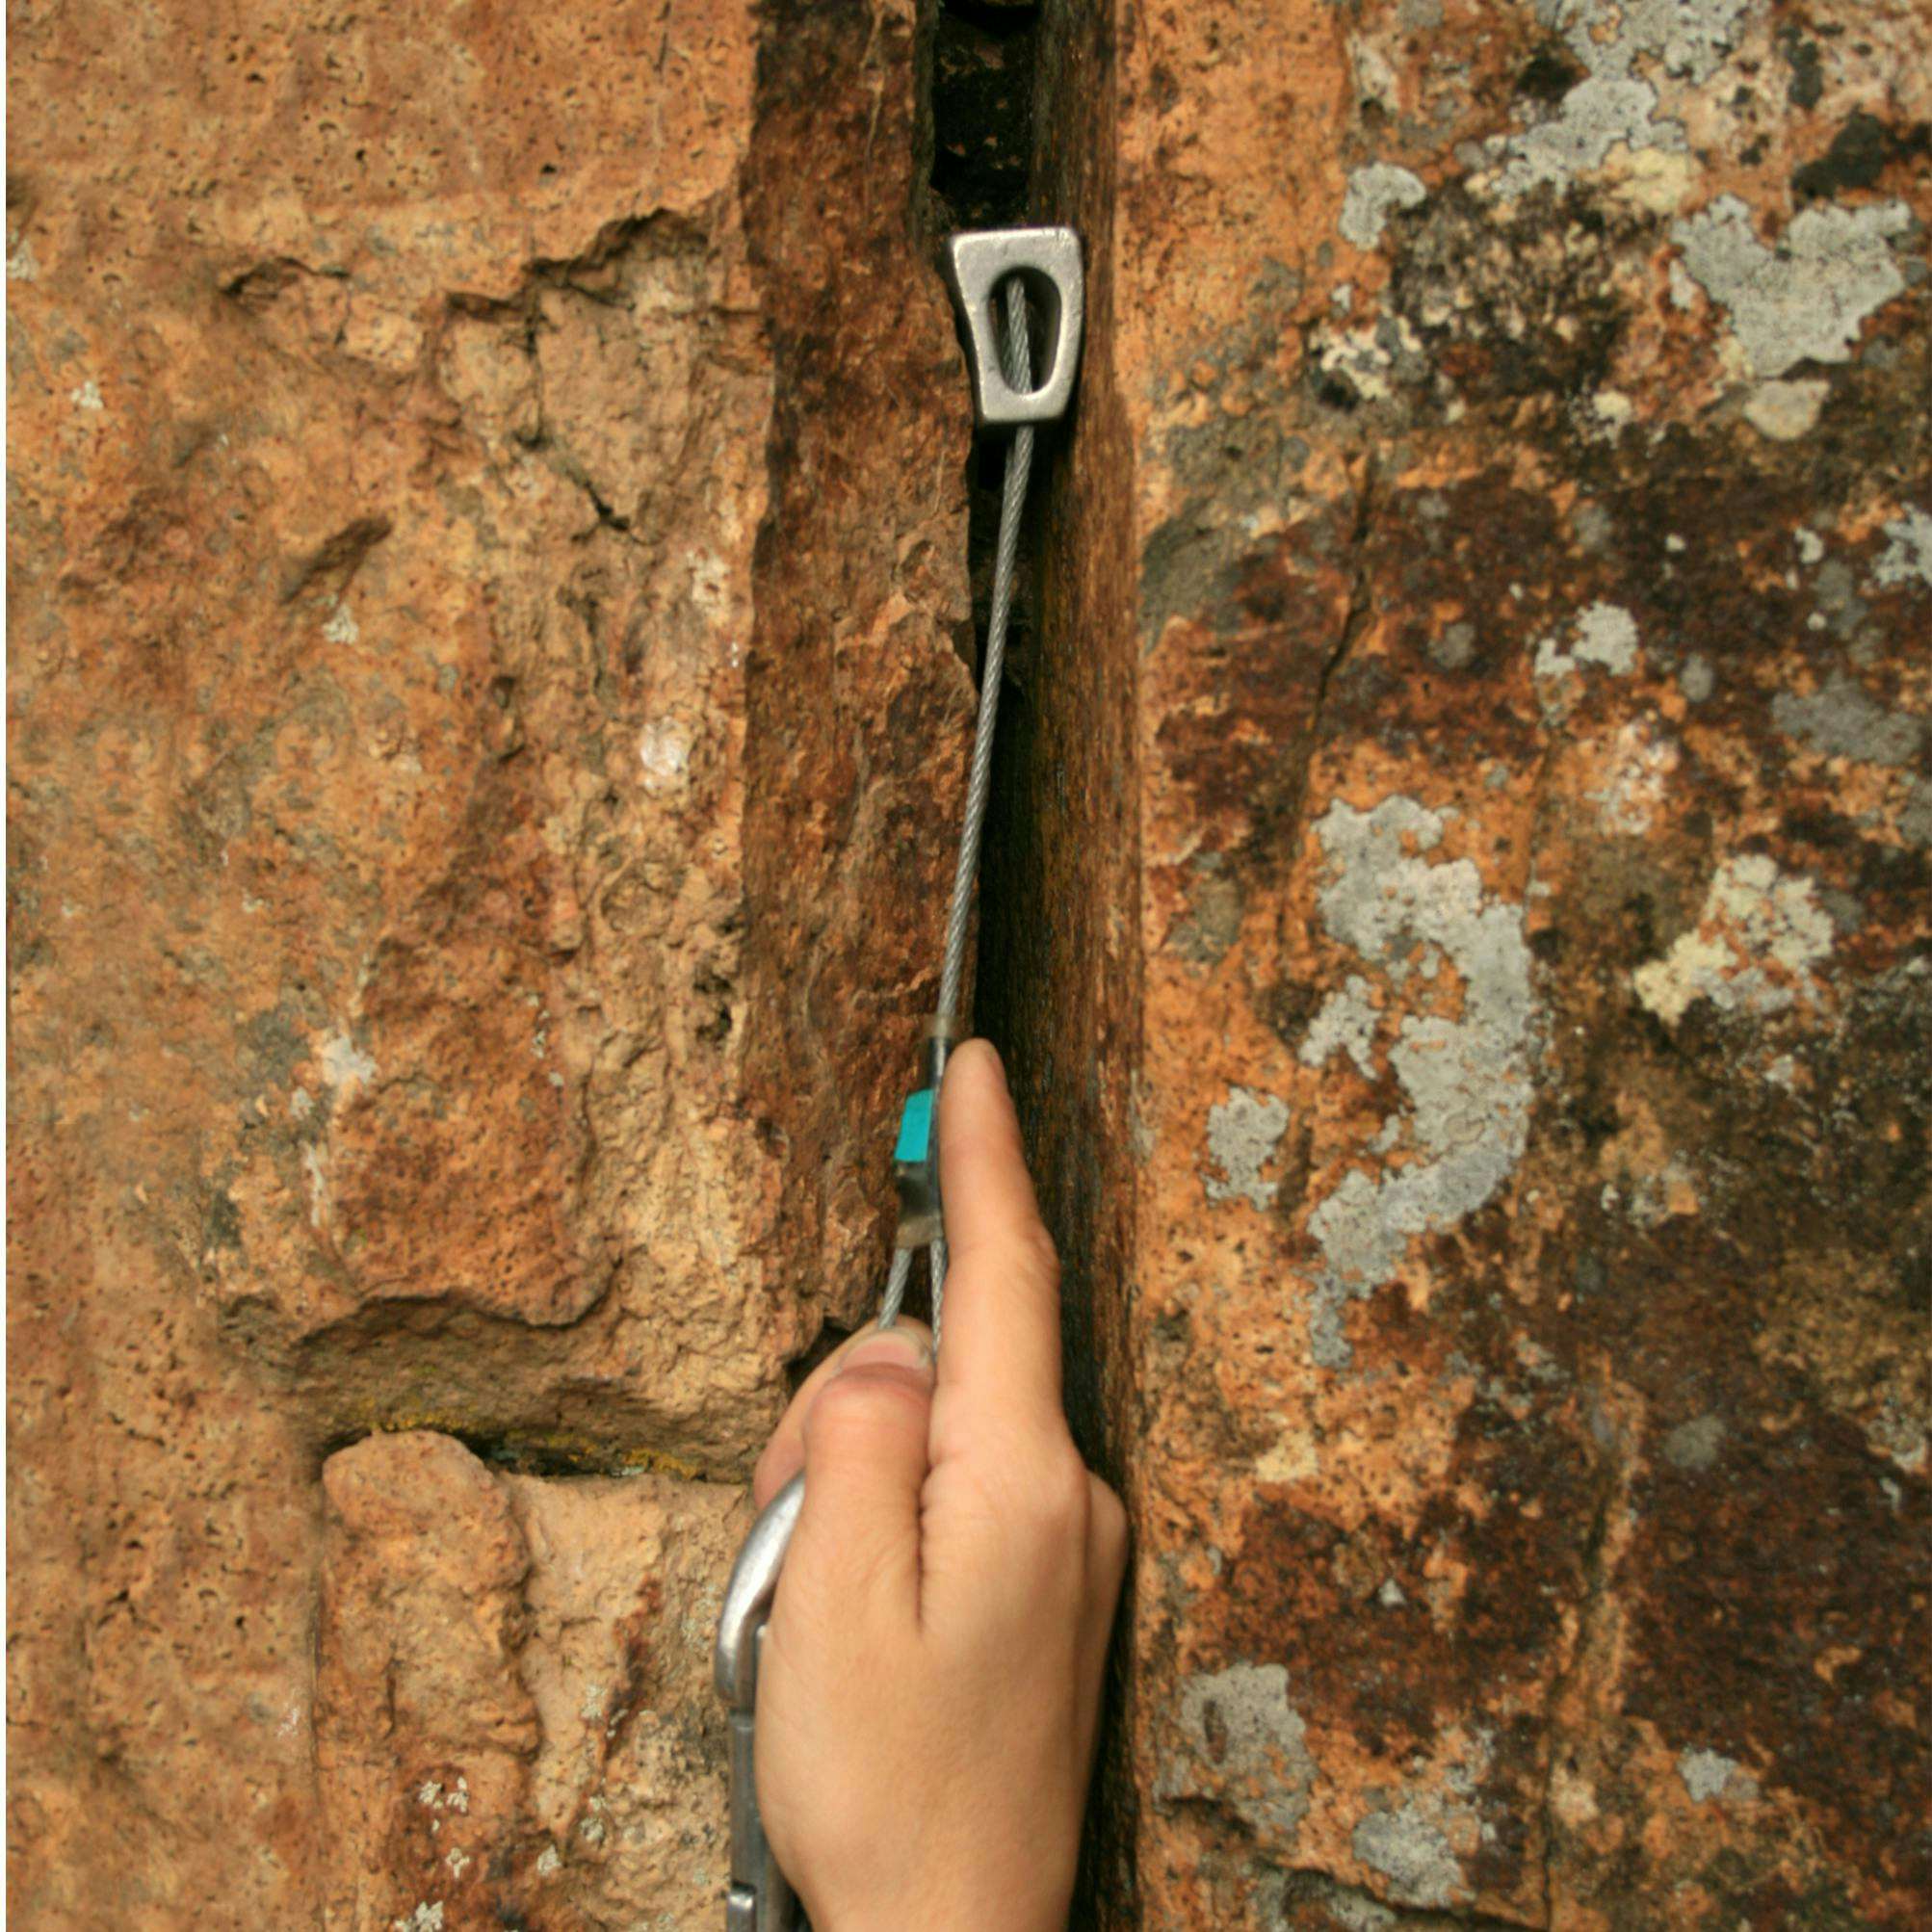 Climber placing a nut into a crack